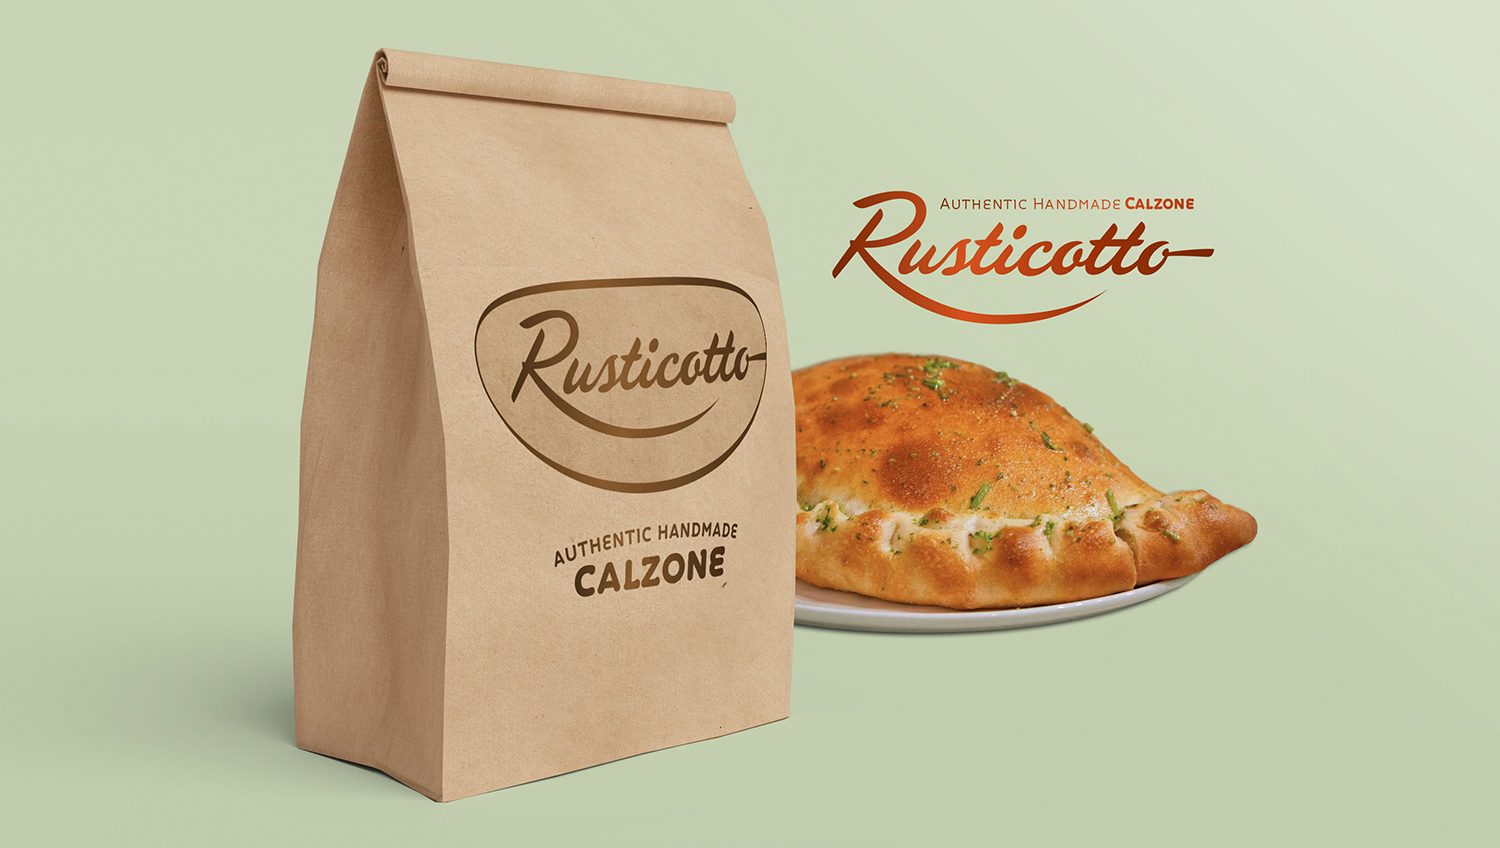 Rusticotto Handmade Calzone - Main Image